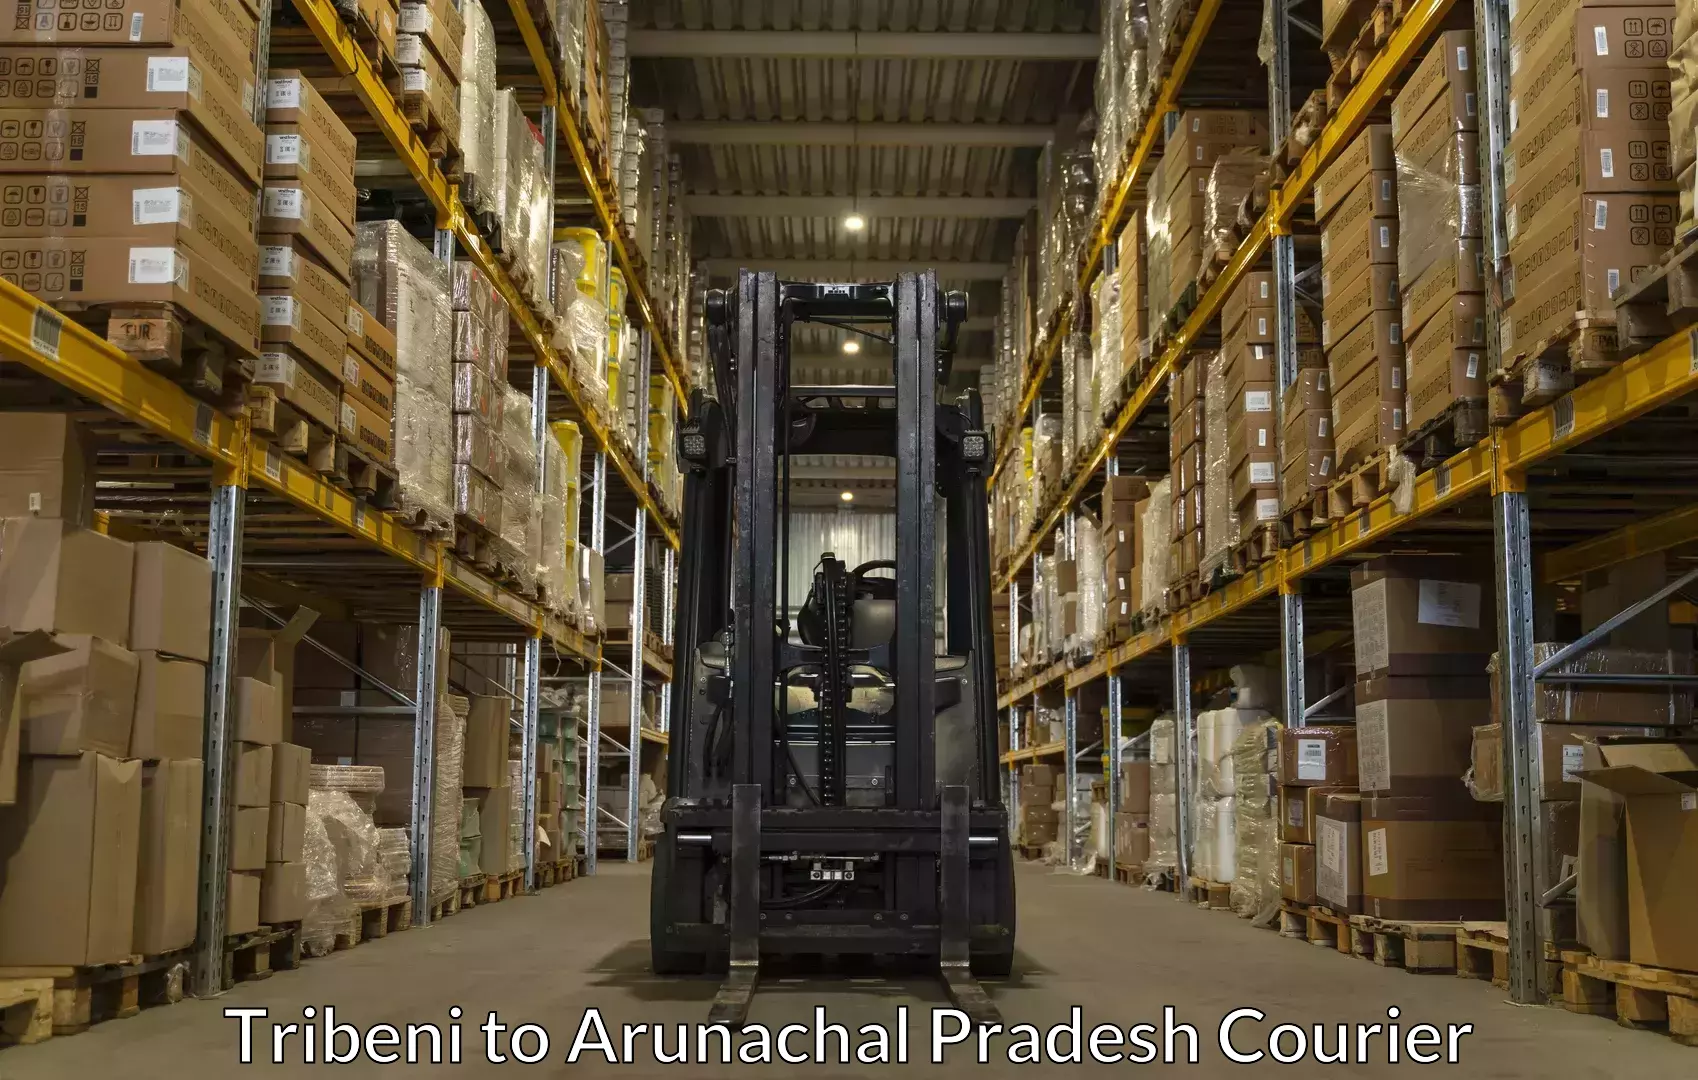 Baggage shipping experts Tribeni to Arunachal Pradesh